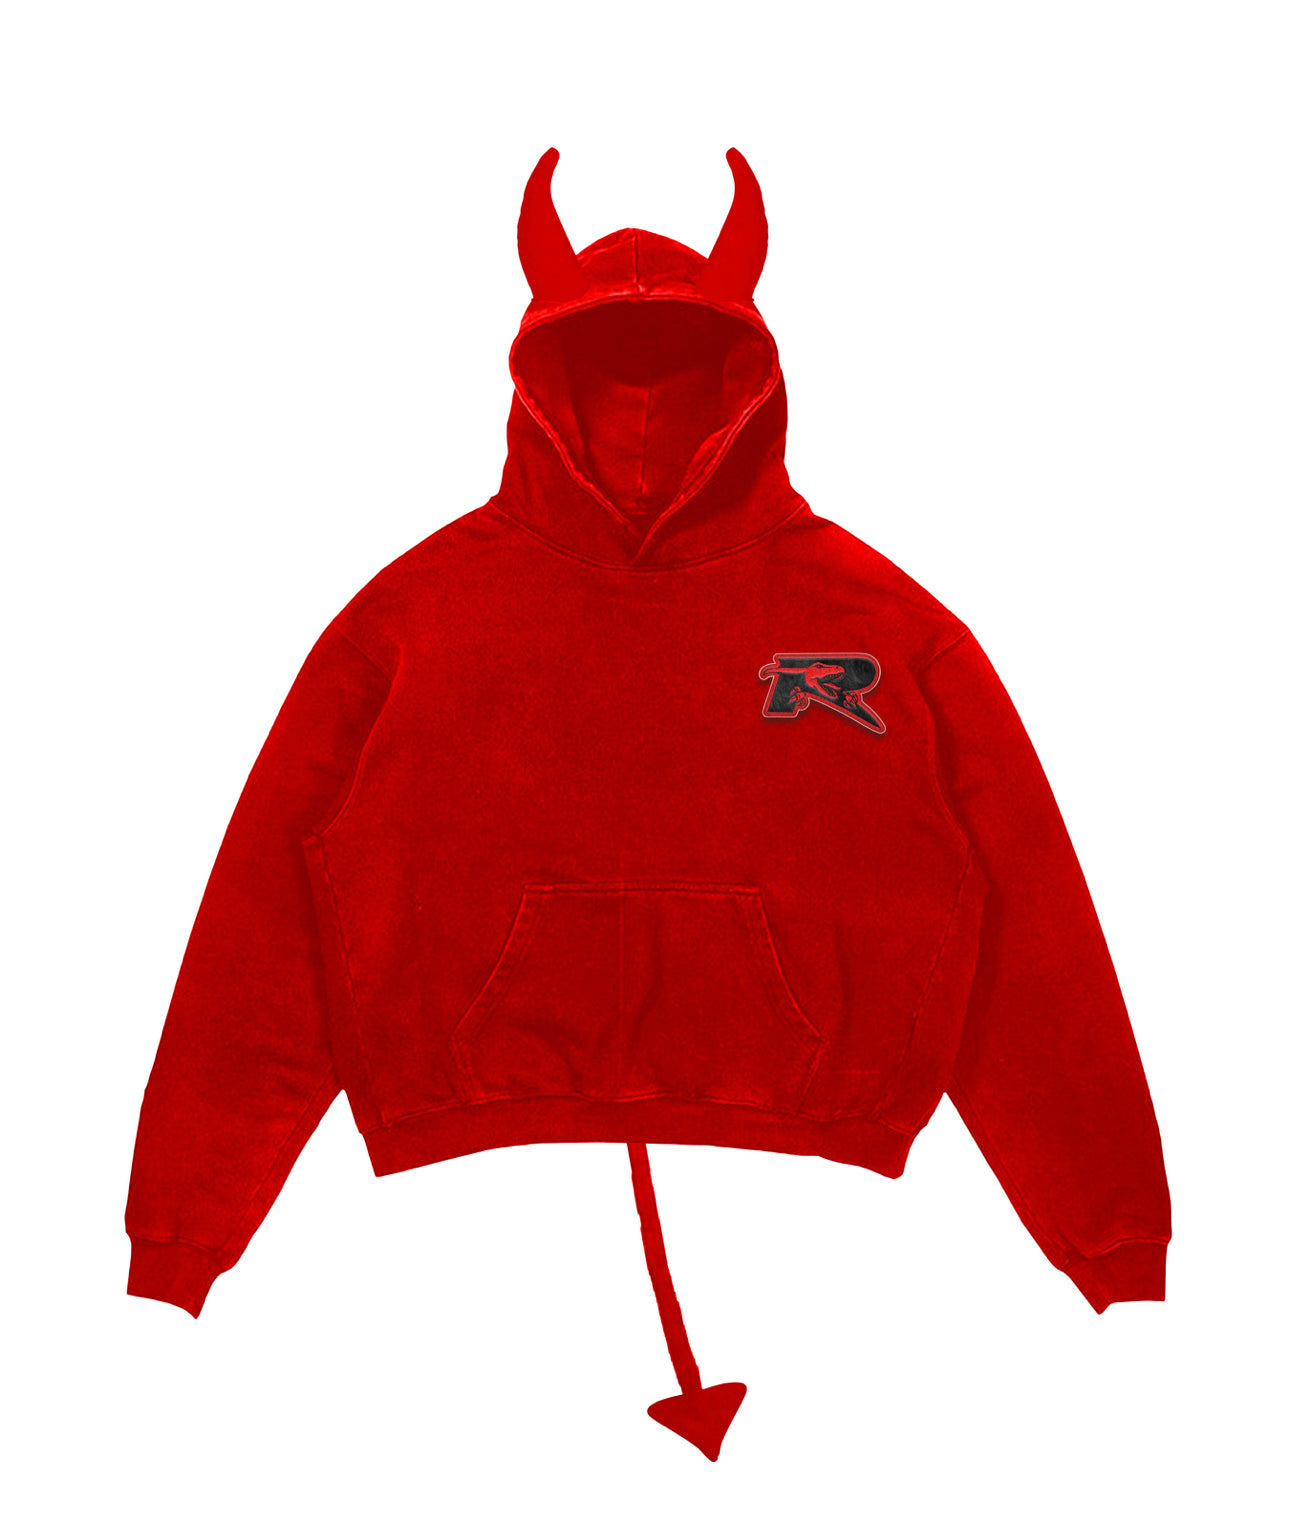 Devil hoodie